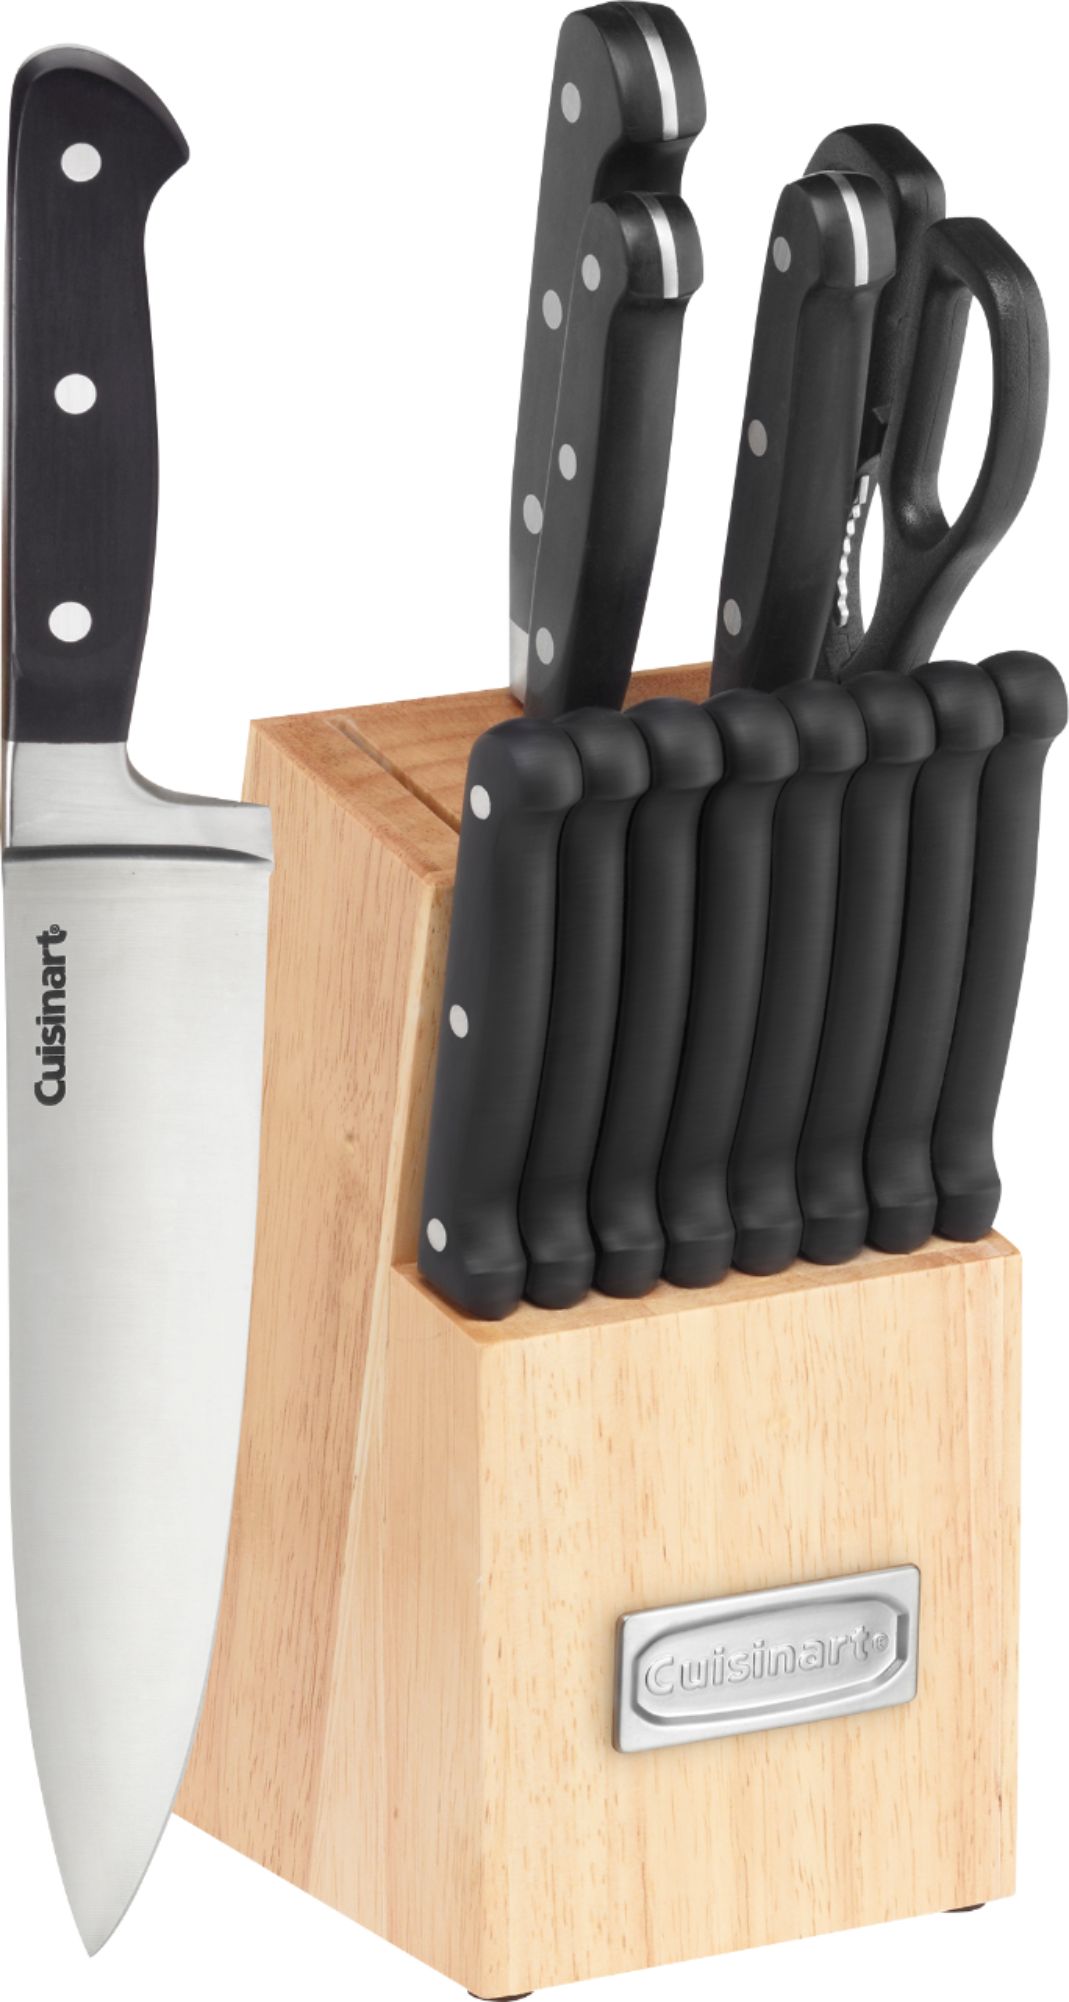 Cuisinart Advantage 14-Piece Knife Set Black C55TR-14PCB - Best Buy